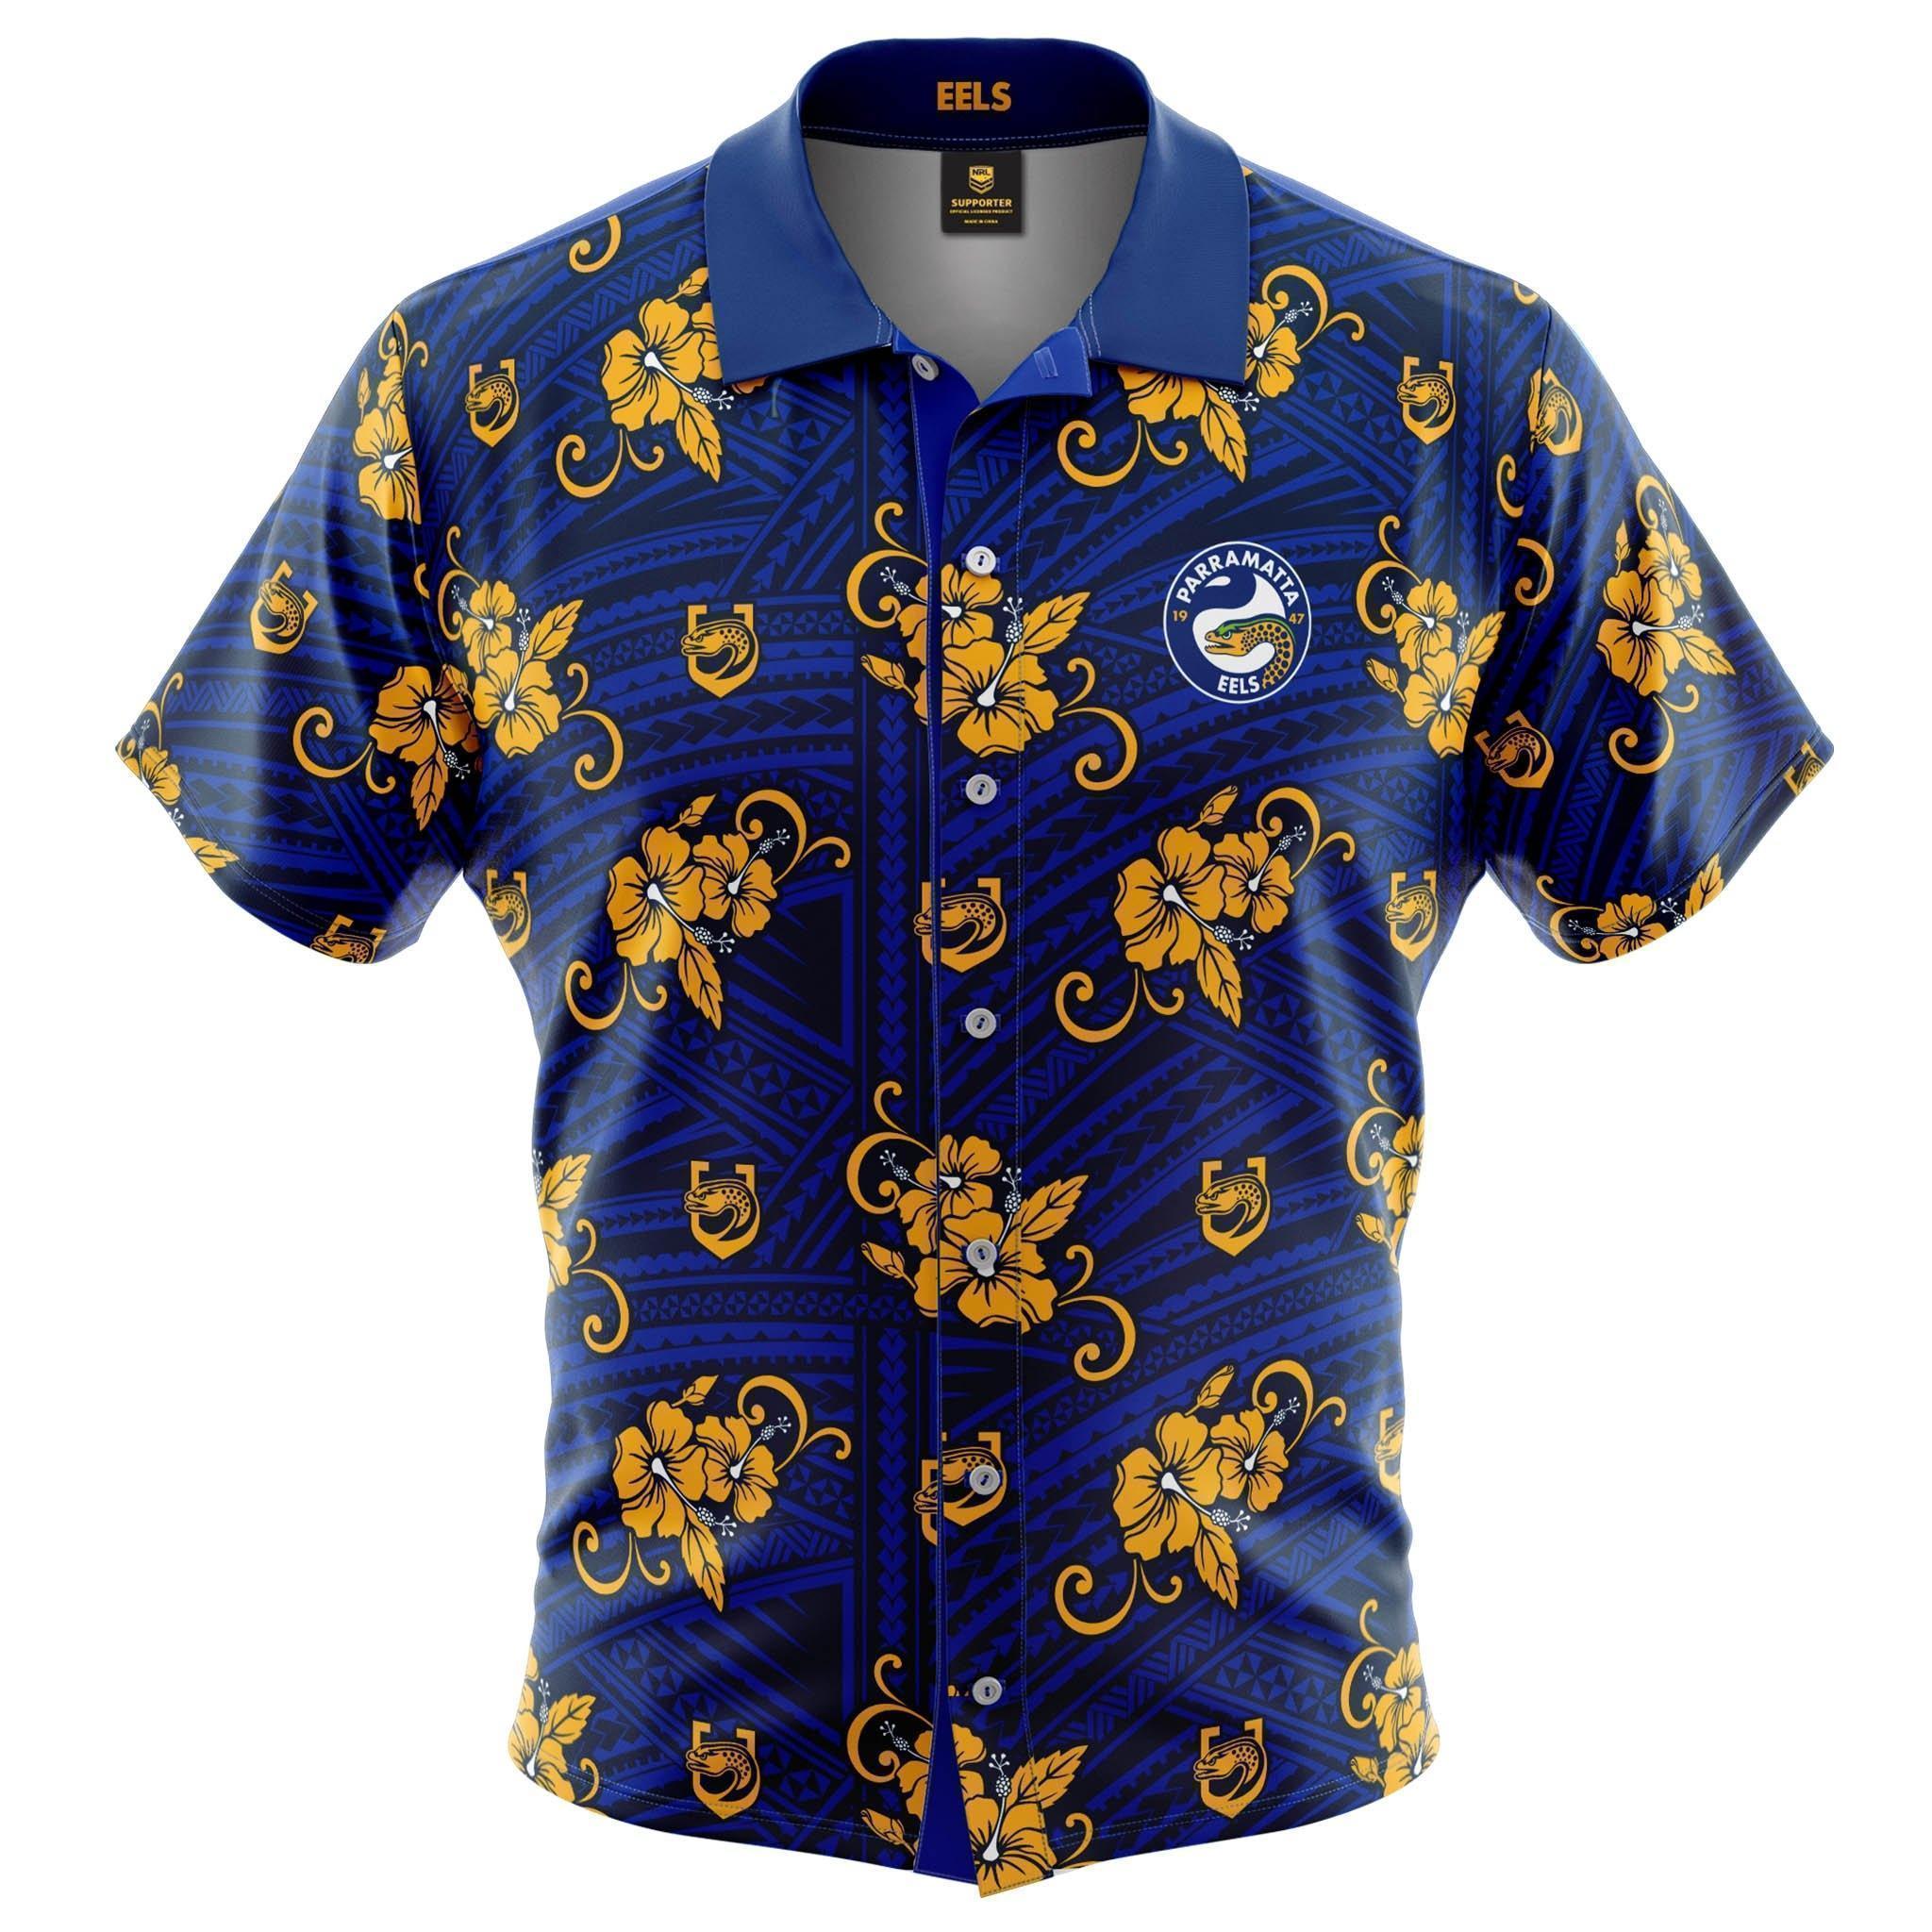 NRL Tribal Button Up Shirts